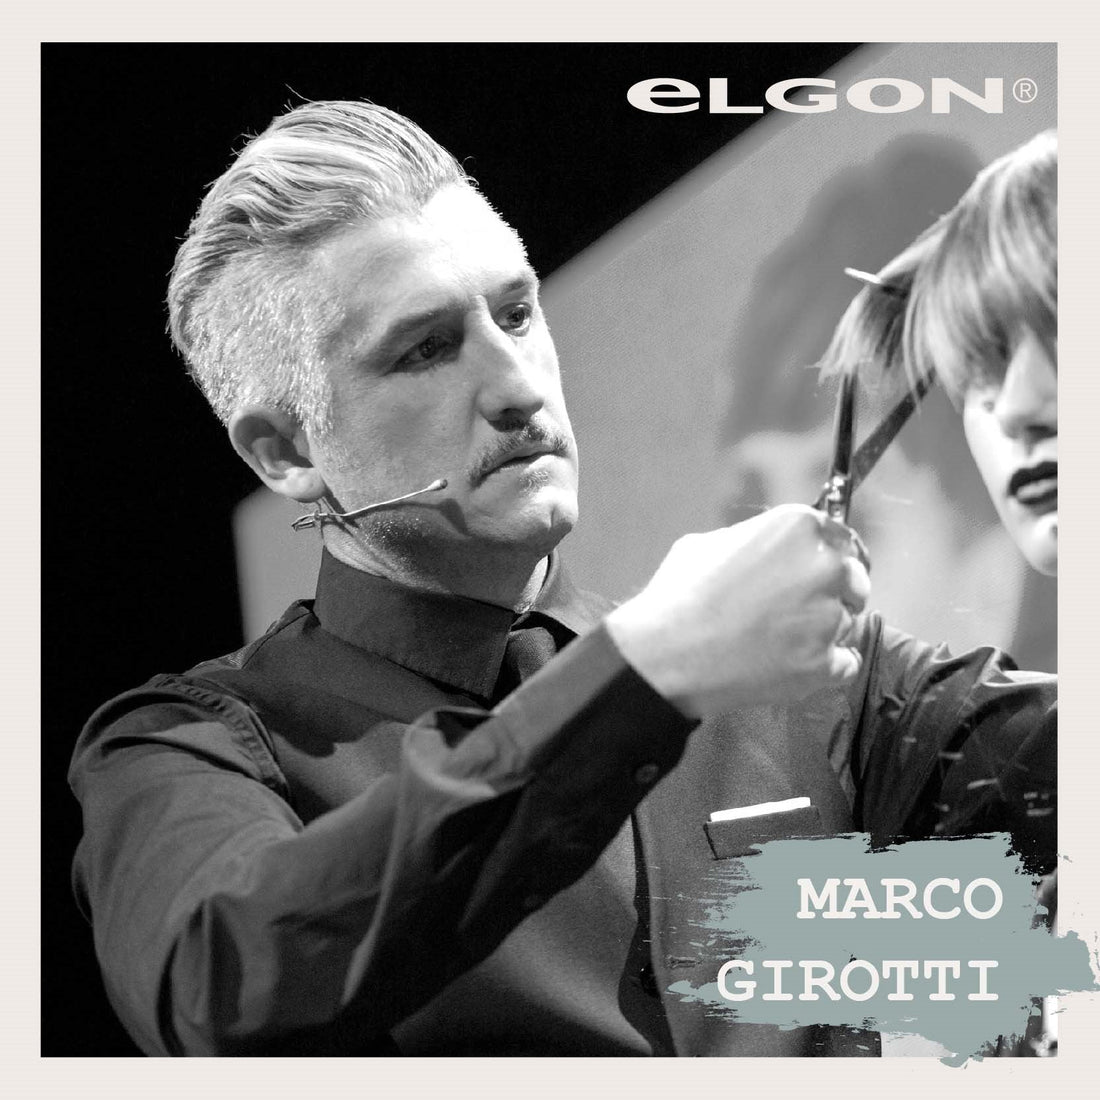 Intervista a Marco Girotti: Elgon Global Artist 2017